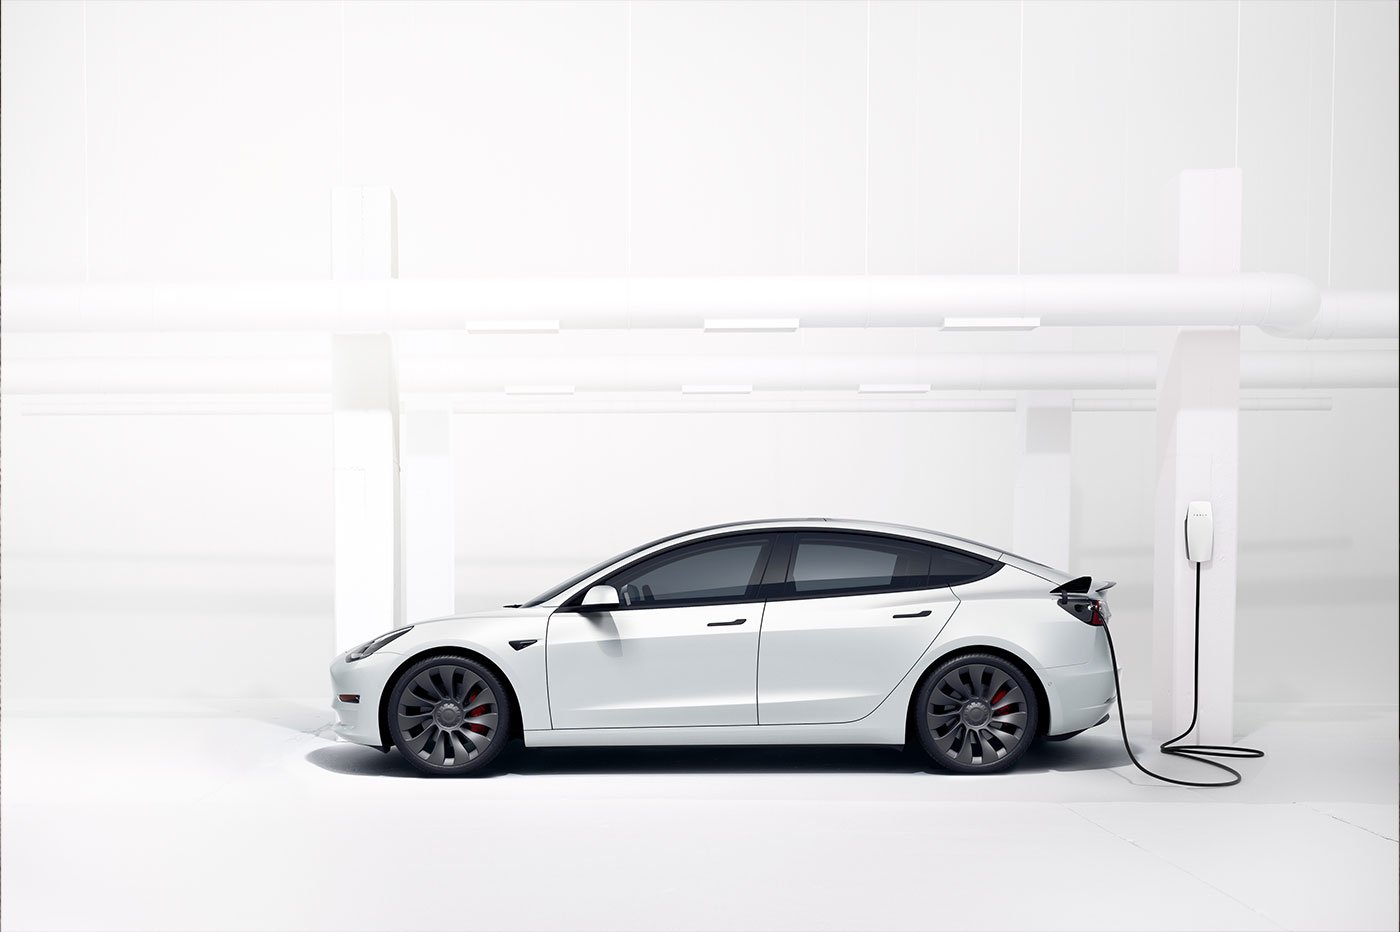 Tesla Model 3 : voici les accessoires indispensables à avoir !